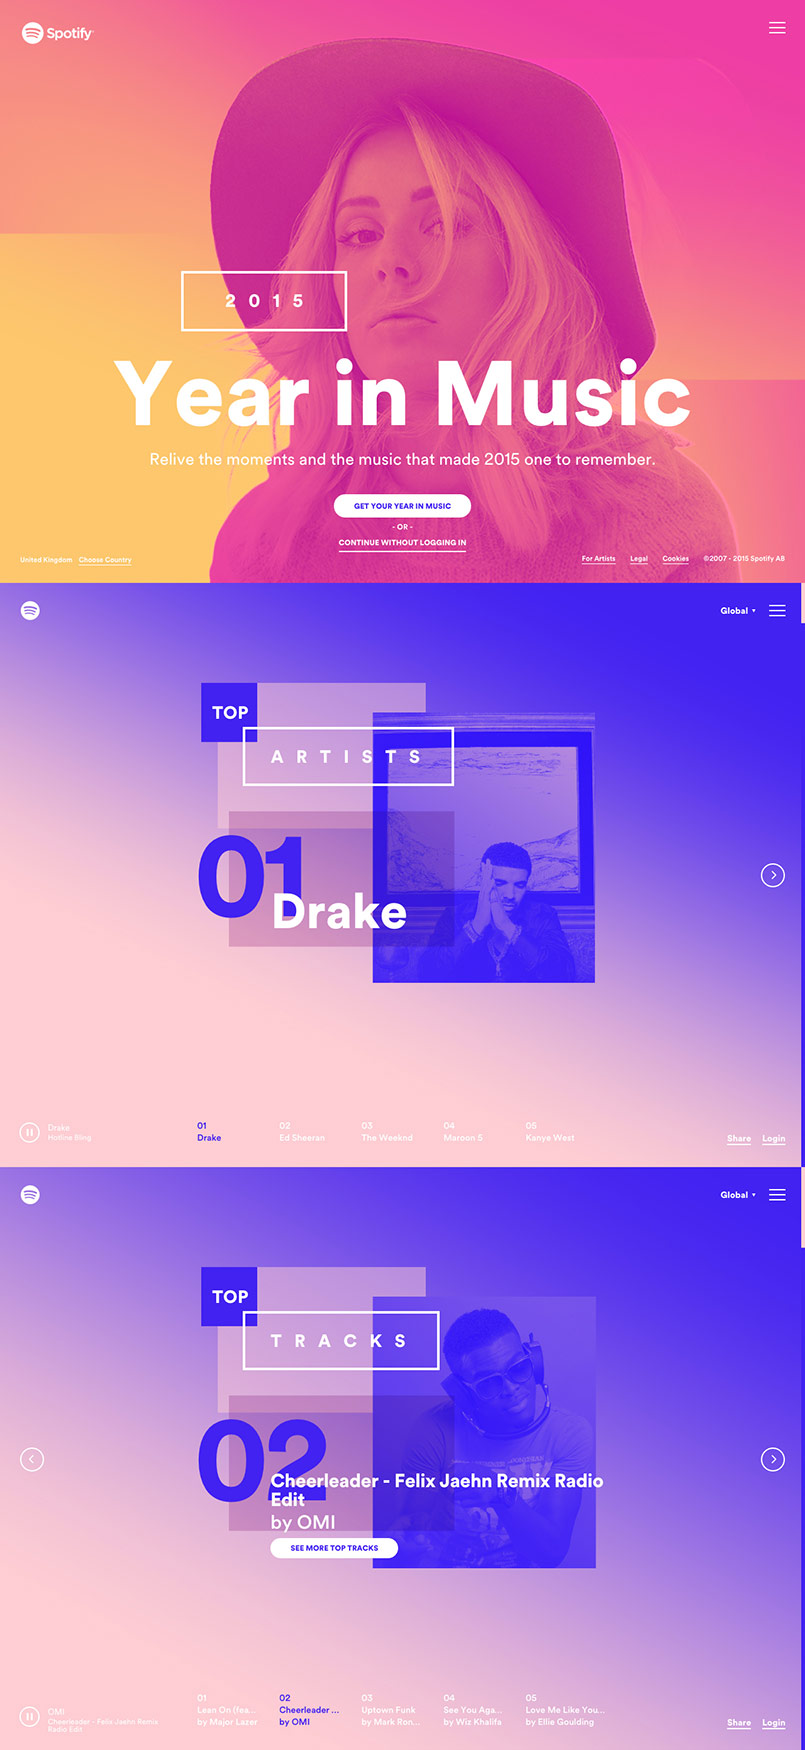 Spotify - Una año de música |   Inspiración. Webs que utilizan imágenes con efecto duotono